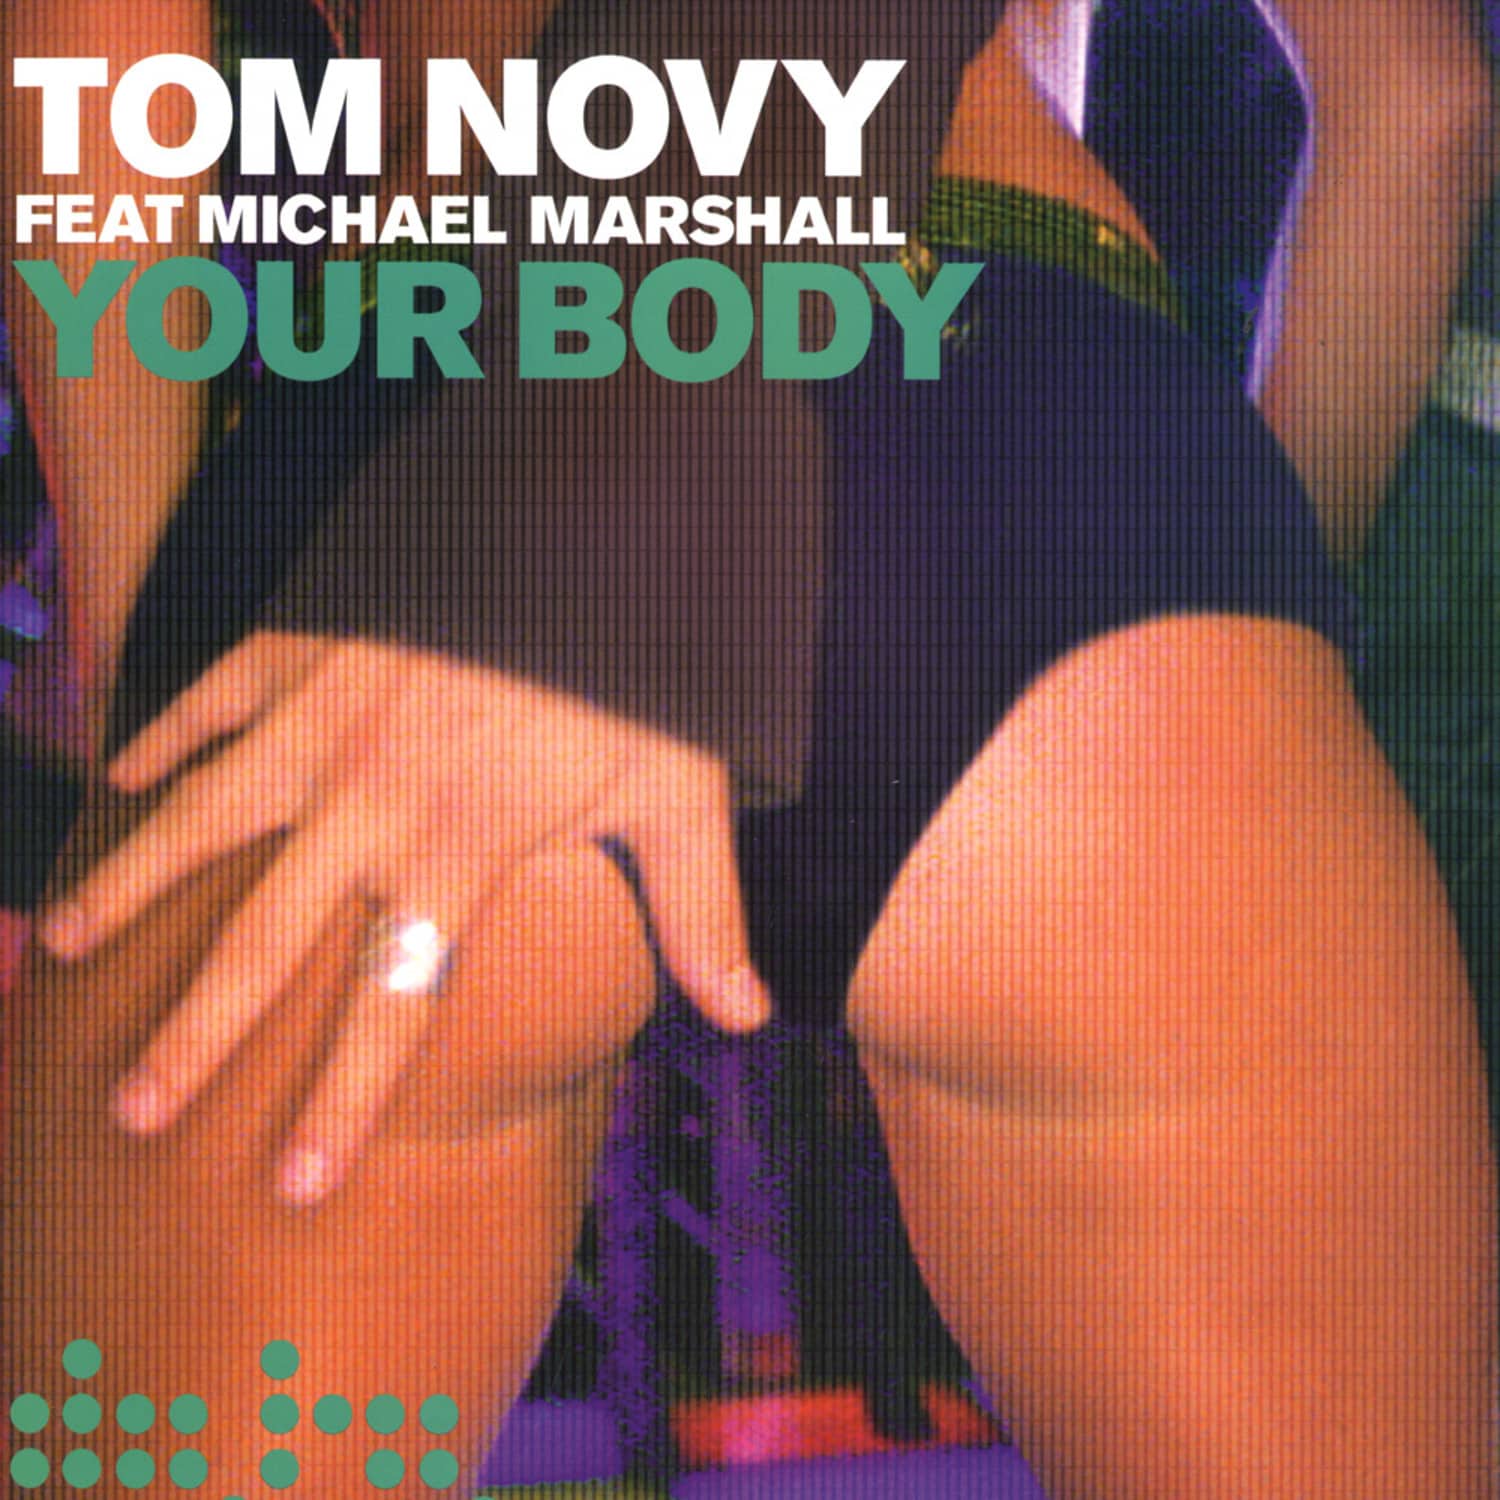 Tom Novy - YOUR BODY